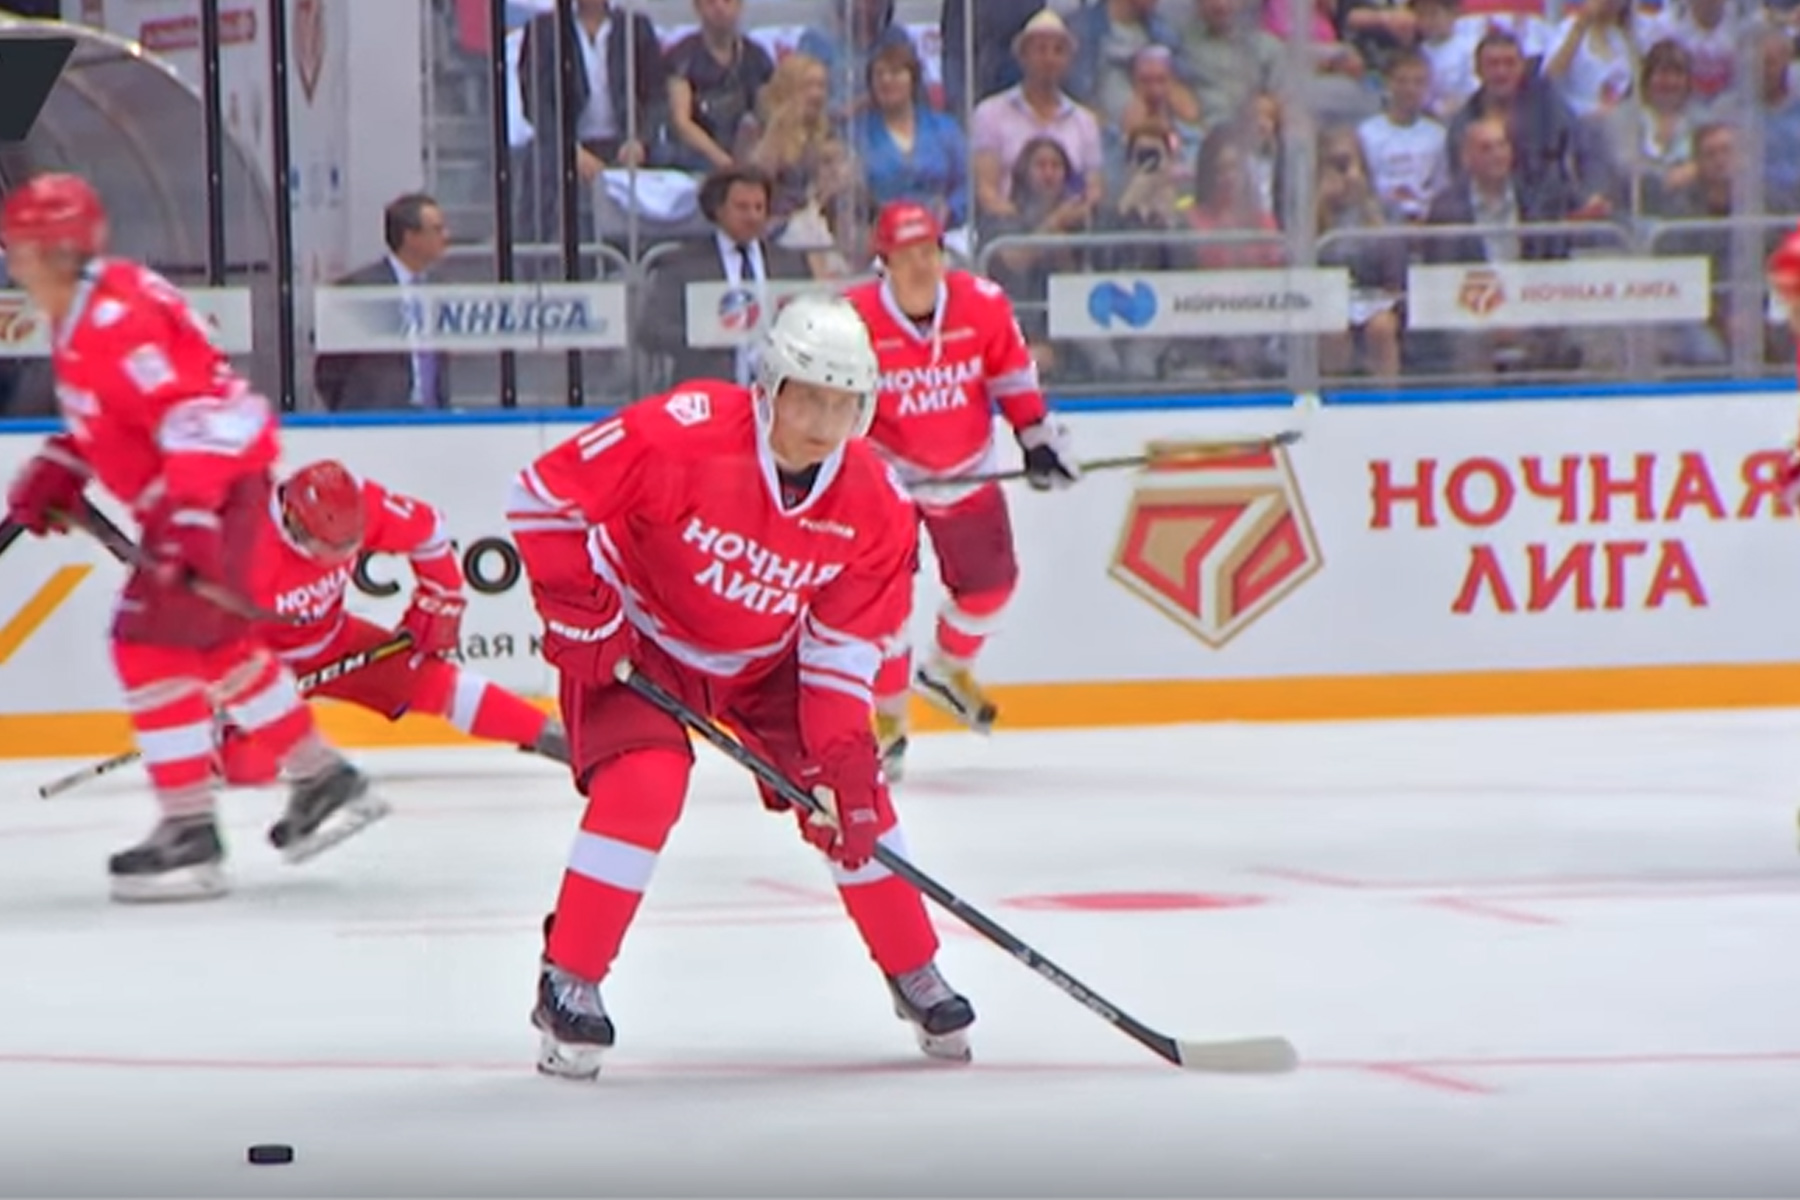 Vea cómo se lució Vladimir Putin durante un partido de hockey (+video)